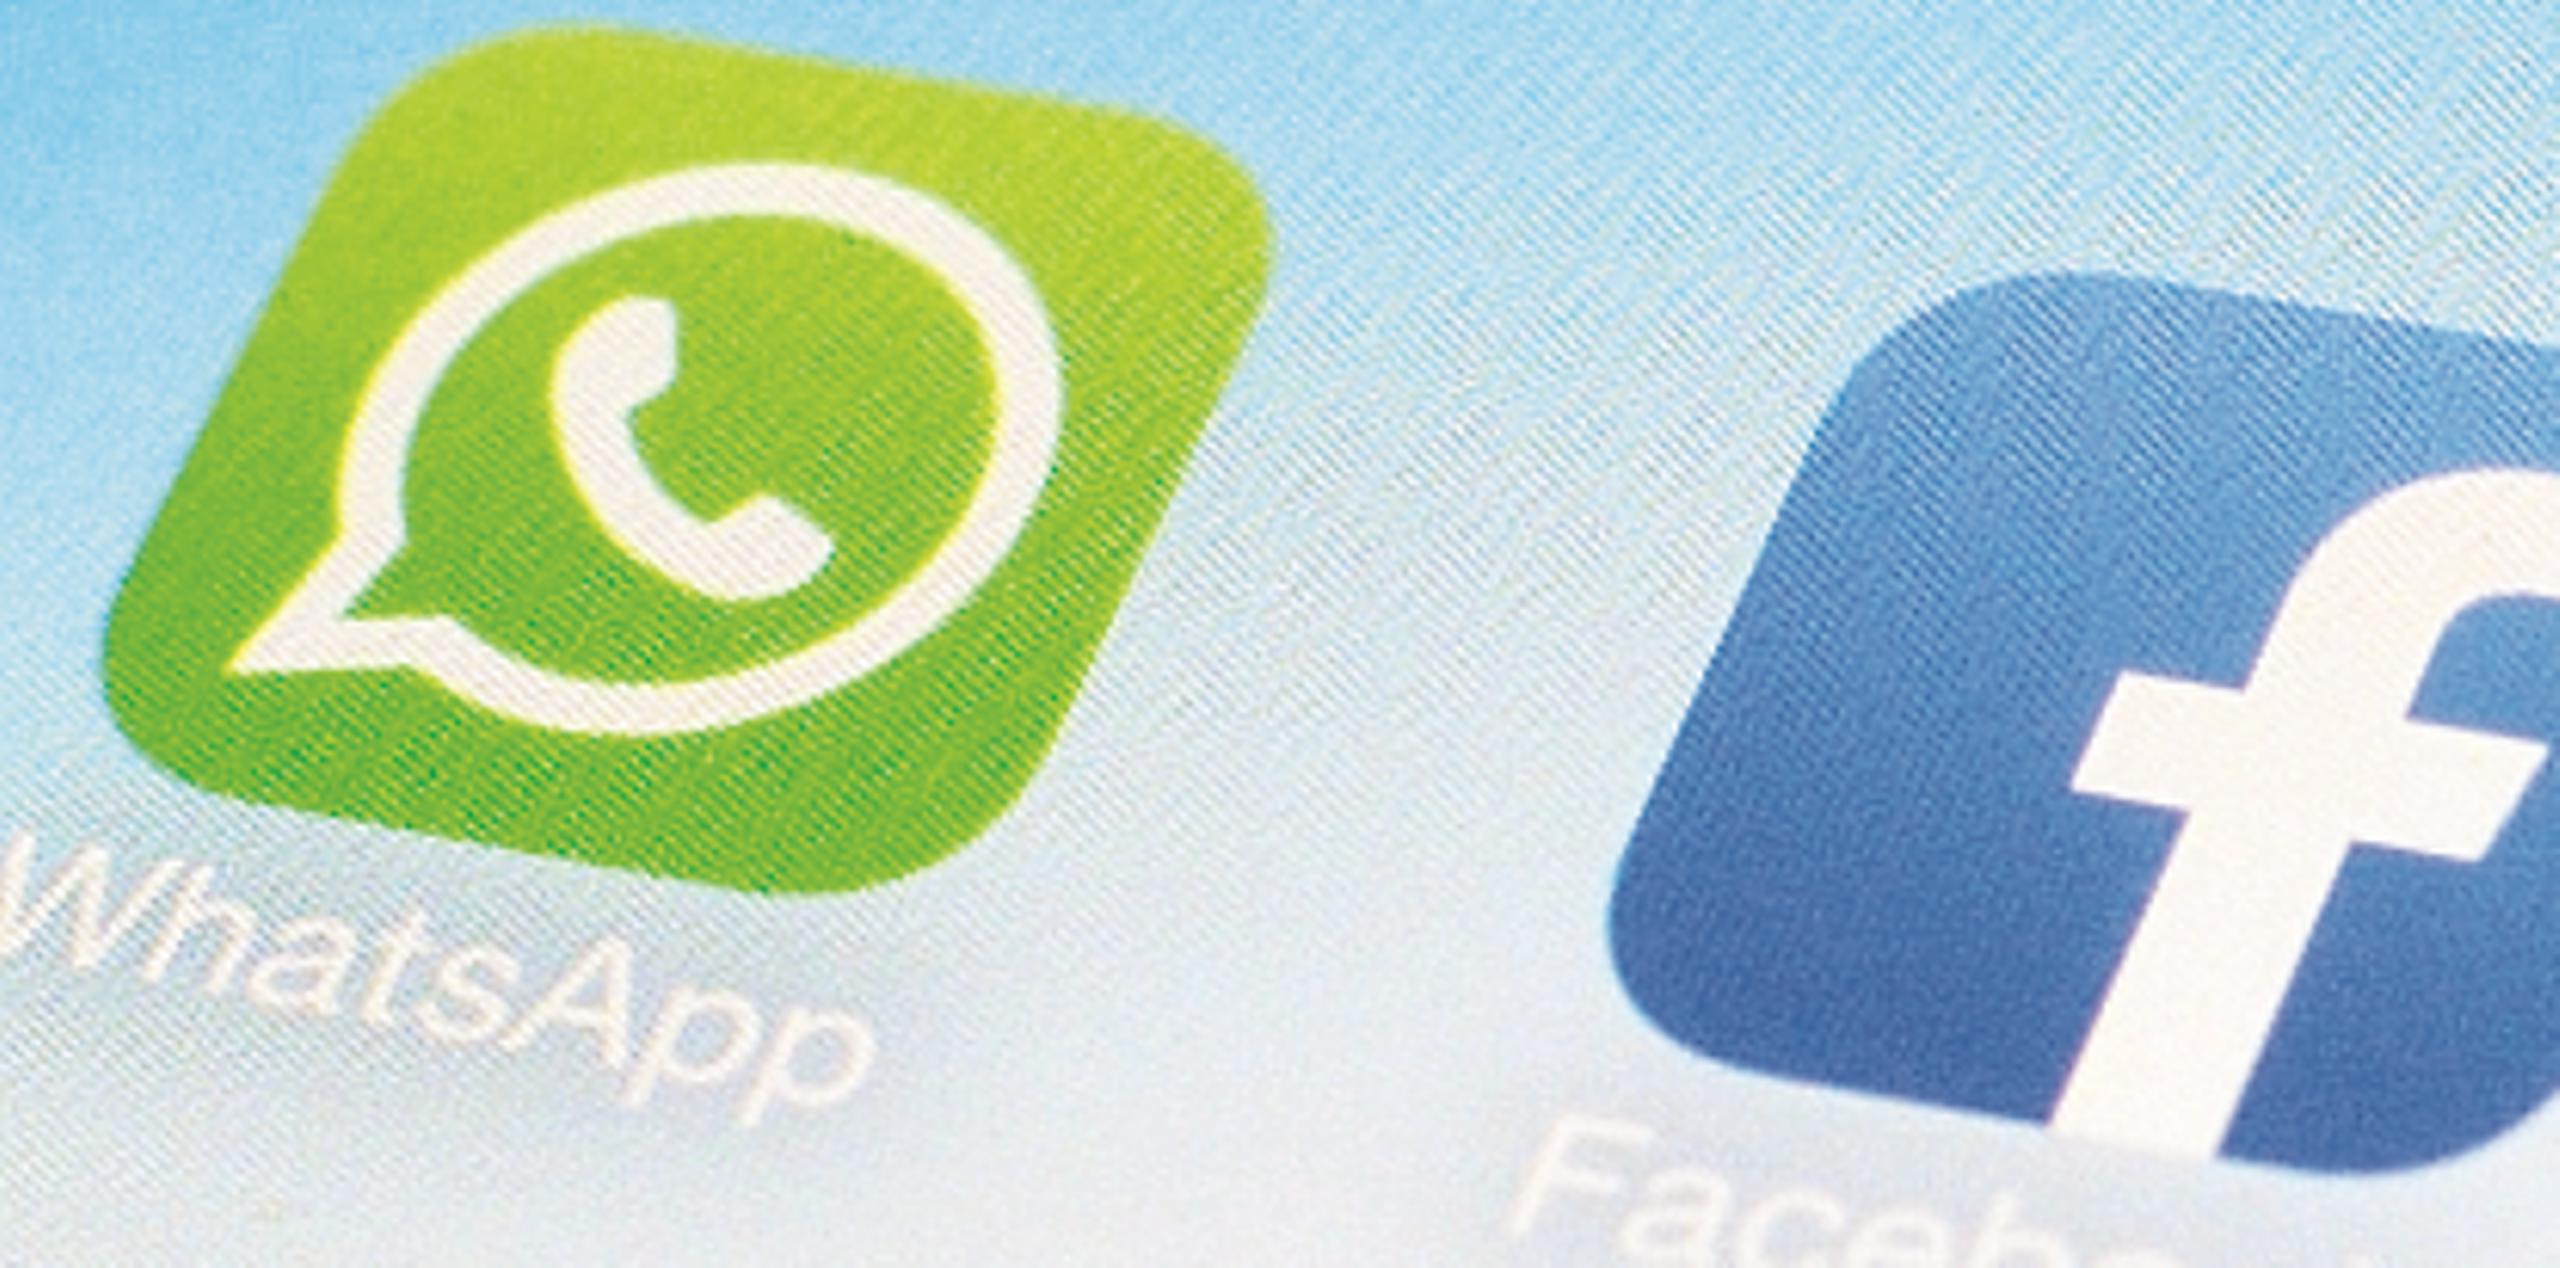 Los mensajes enviados y recibidos por la versión web de Whatsapp se almacenarán asimismo en el teléfono móvil. (Archivo)